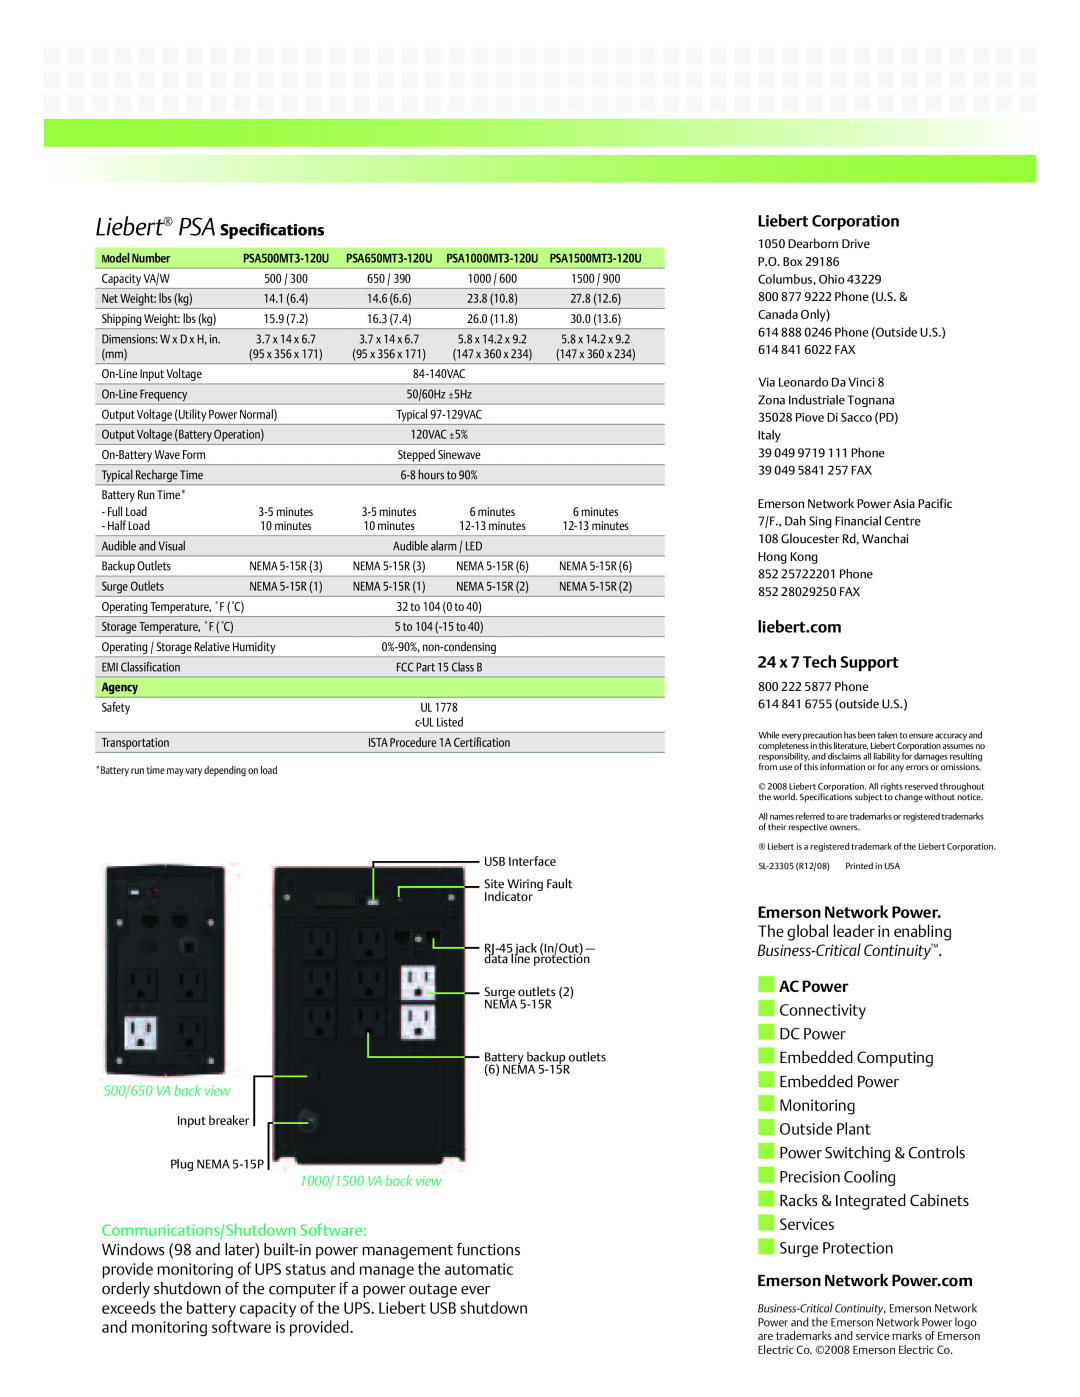 Emerson PSA650MT3-120U Liebert PSA Specifications, Communications/Shutdown Software, Liebert Corporation, AC Power, Agency 